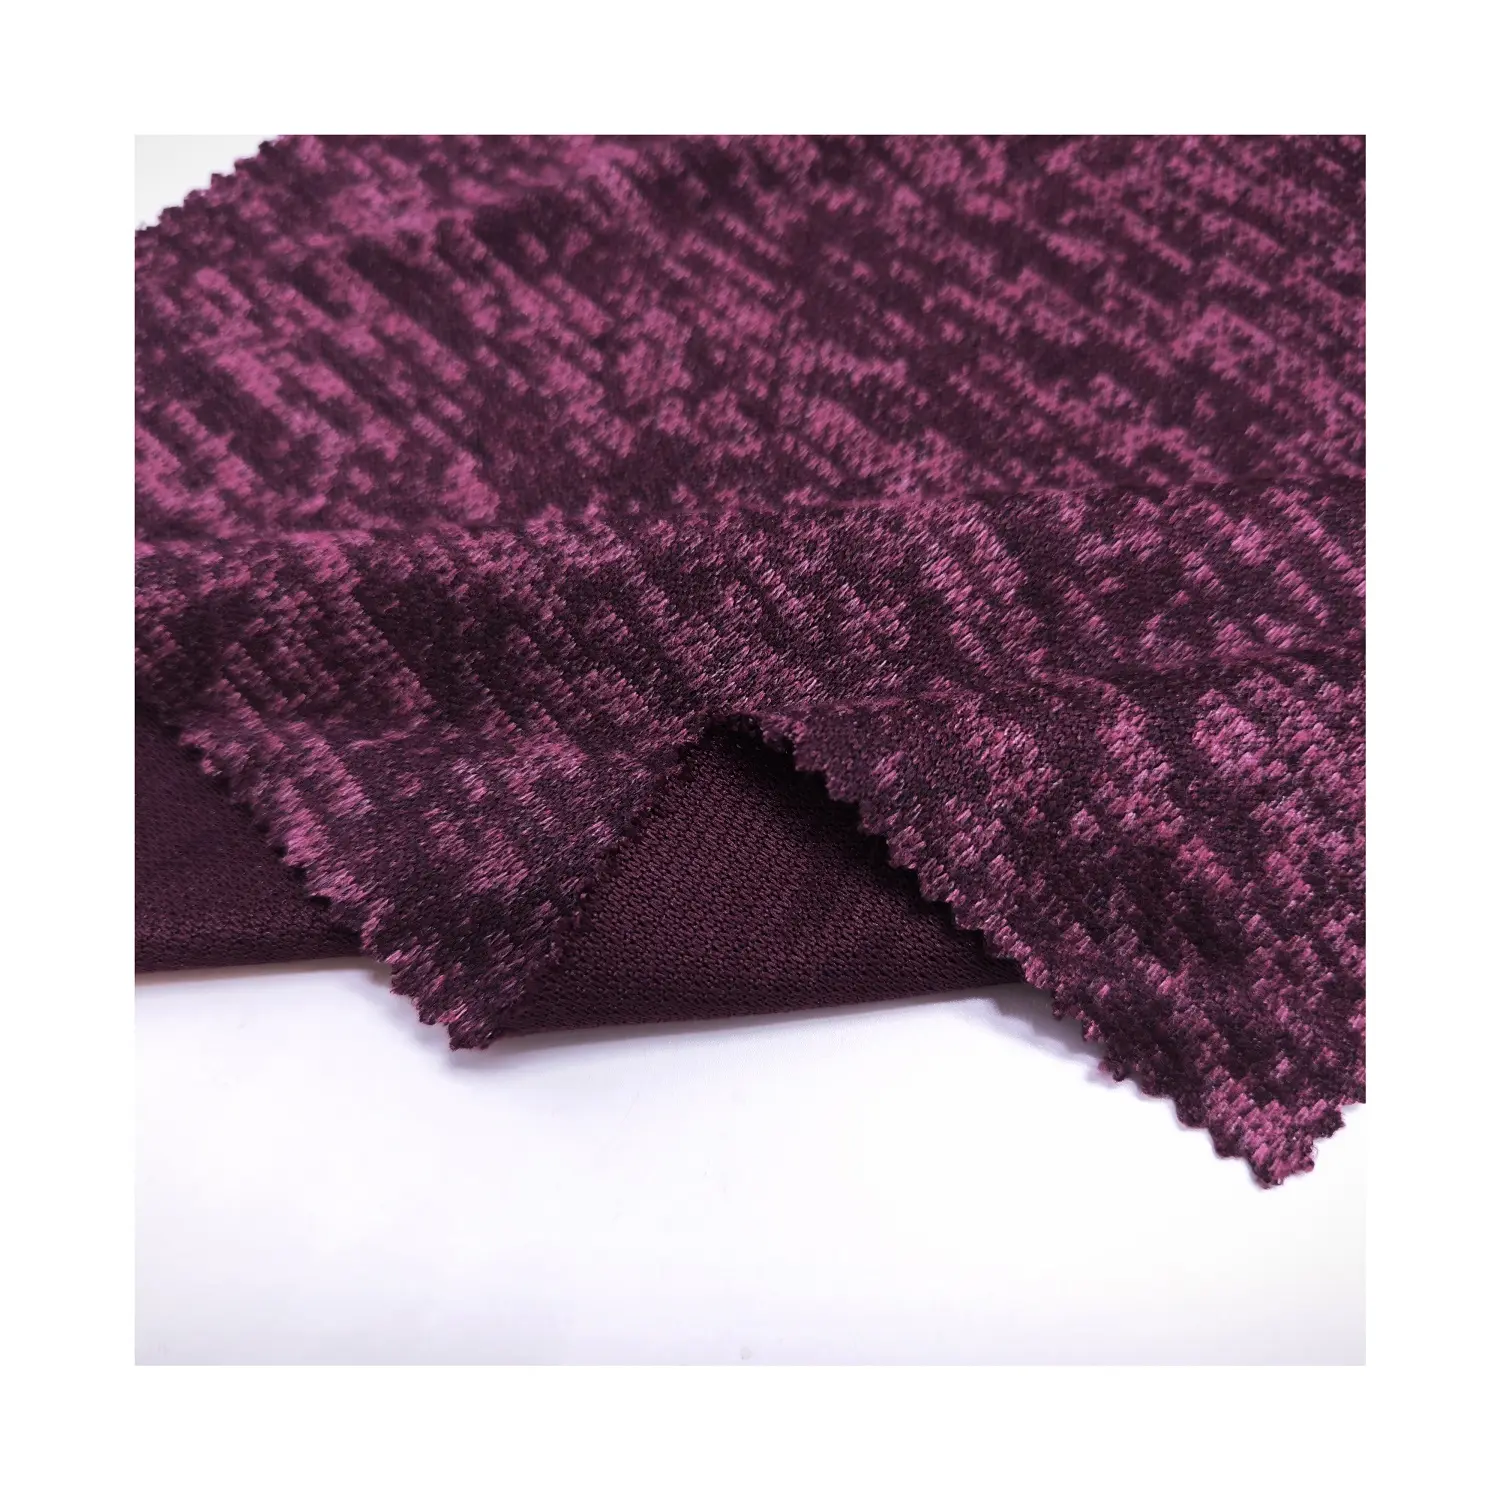 Shaoxing usine pull en tricot polaire tissu directement de haute qualité tissu brossé chiné gris Hacci pour femmes vêtements